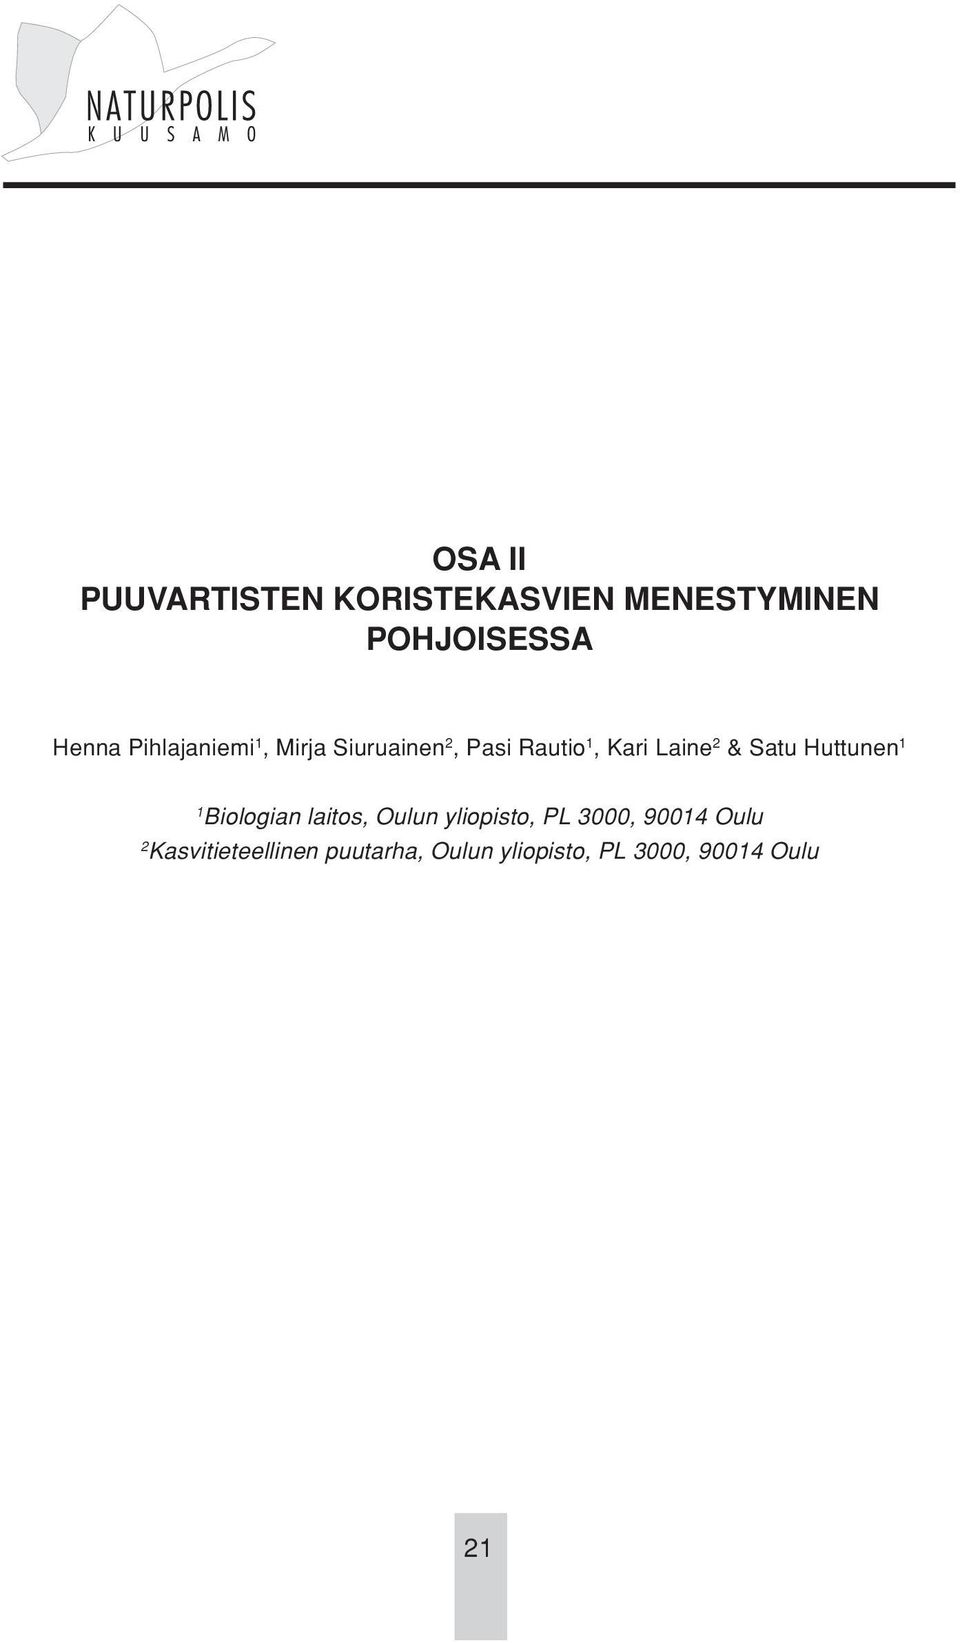 Satu Huttunen 1 1 Biologian laitos, Oulun yliopisto, PL 3000, 90014